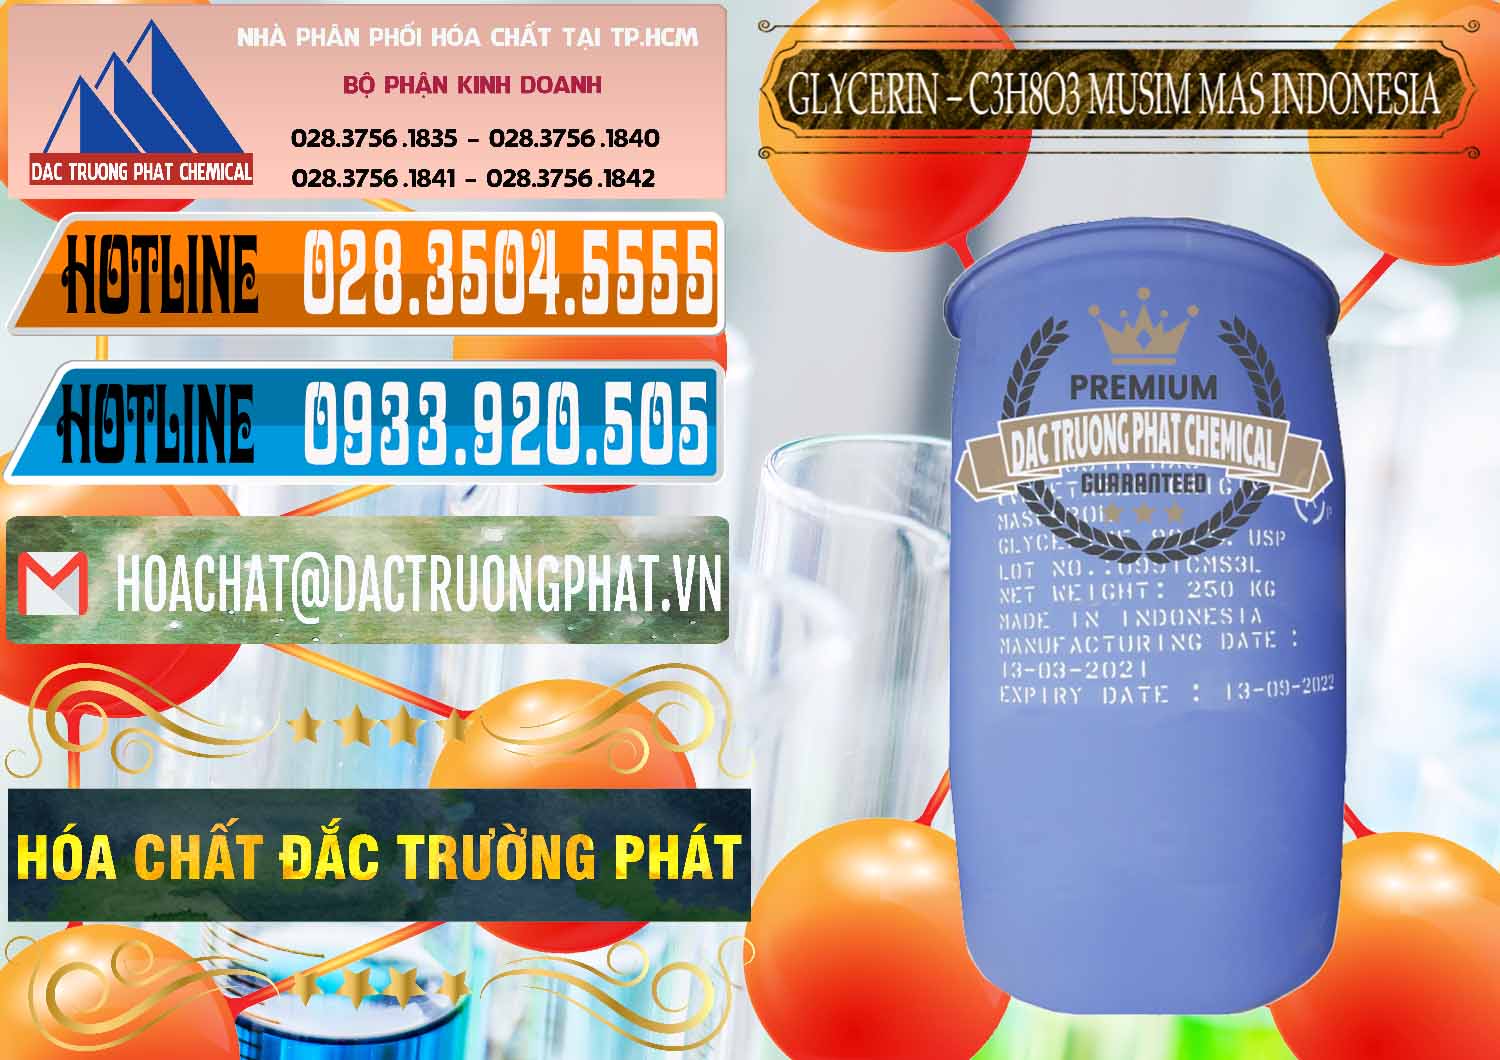 Cty chuyên bán - phân phối Glycerin – C3H8O3 99.7% Musim Mas Indonesia - 0272 - Cung cấp & phân phối hóa chất tại TP.HCM - stmp.net